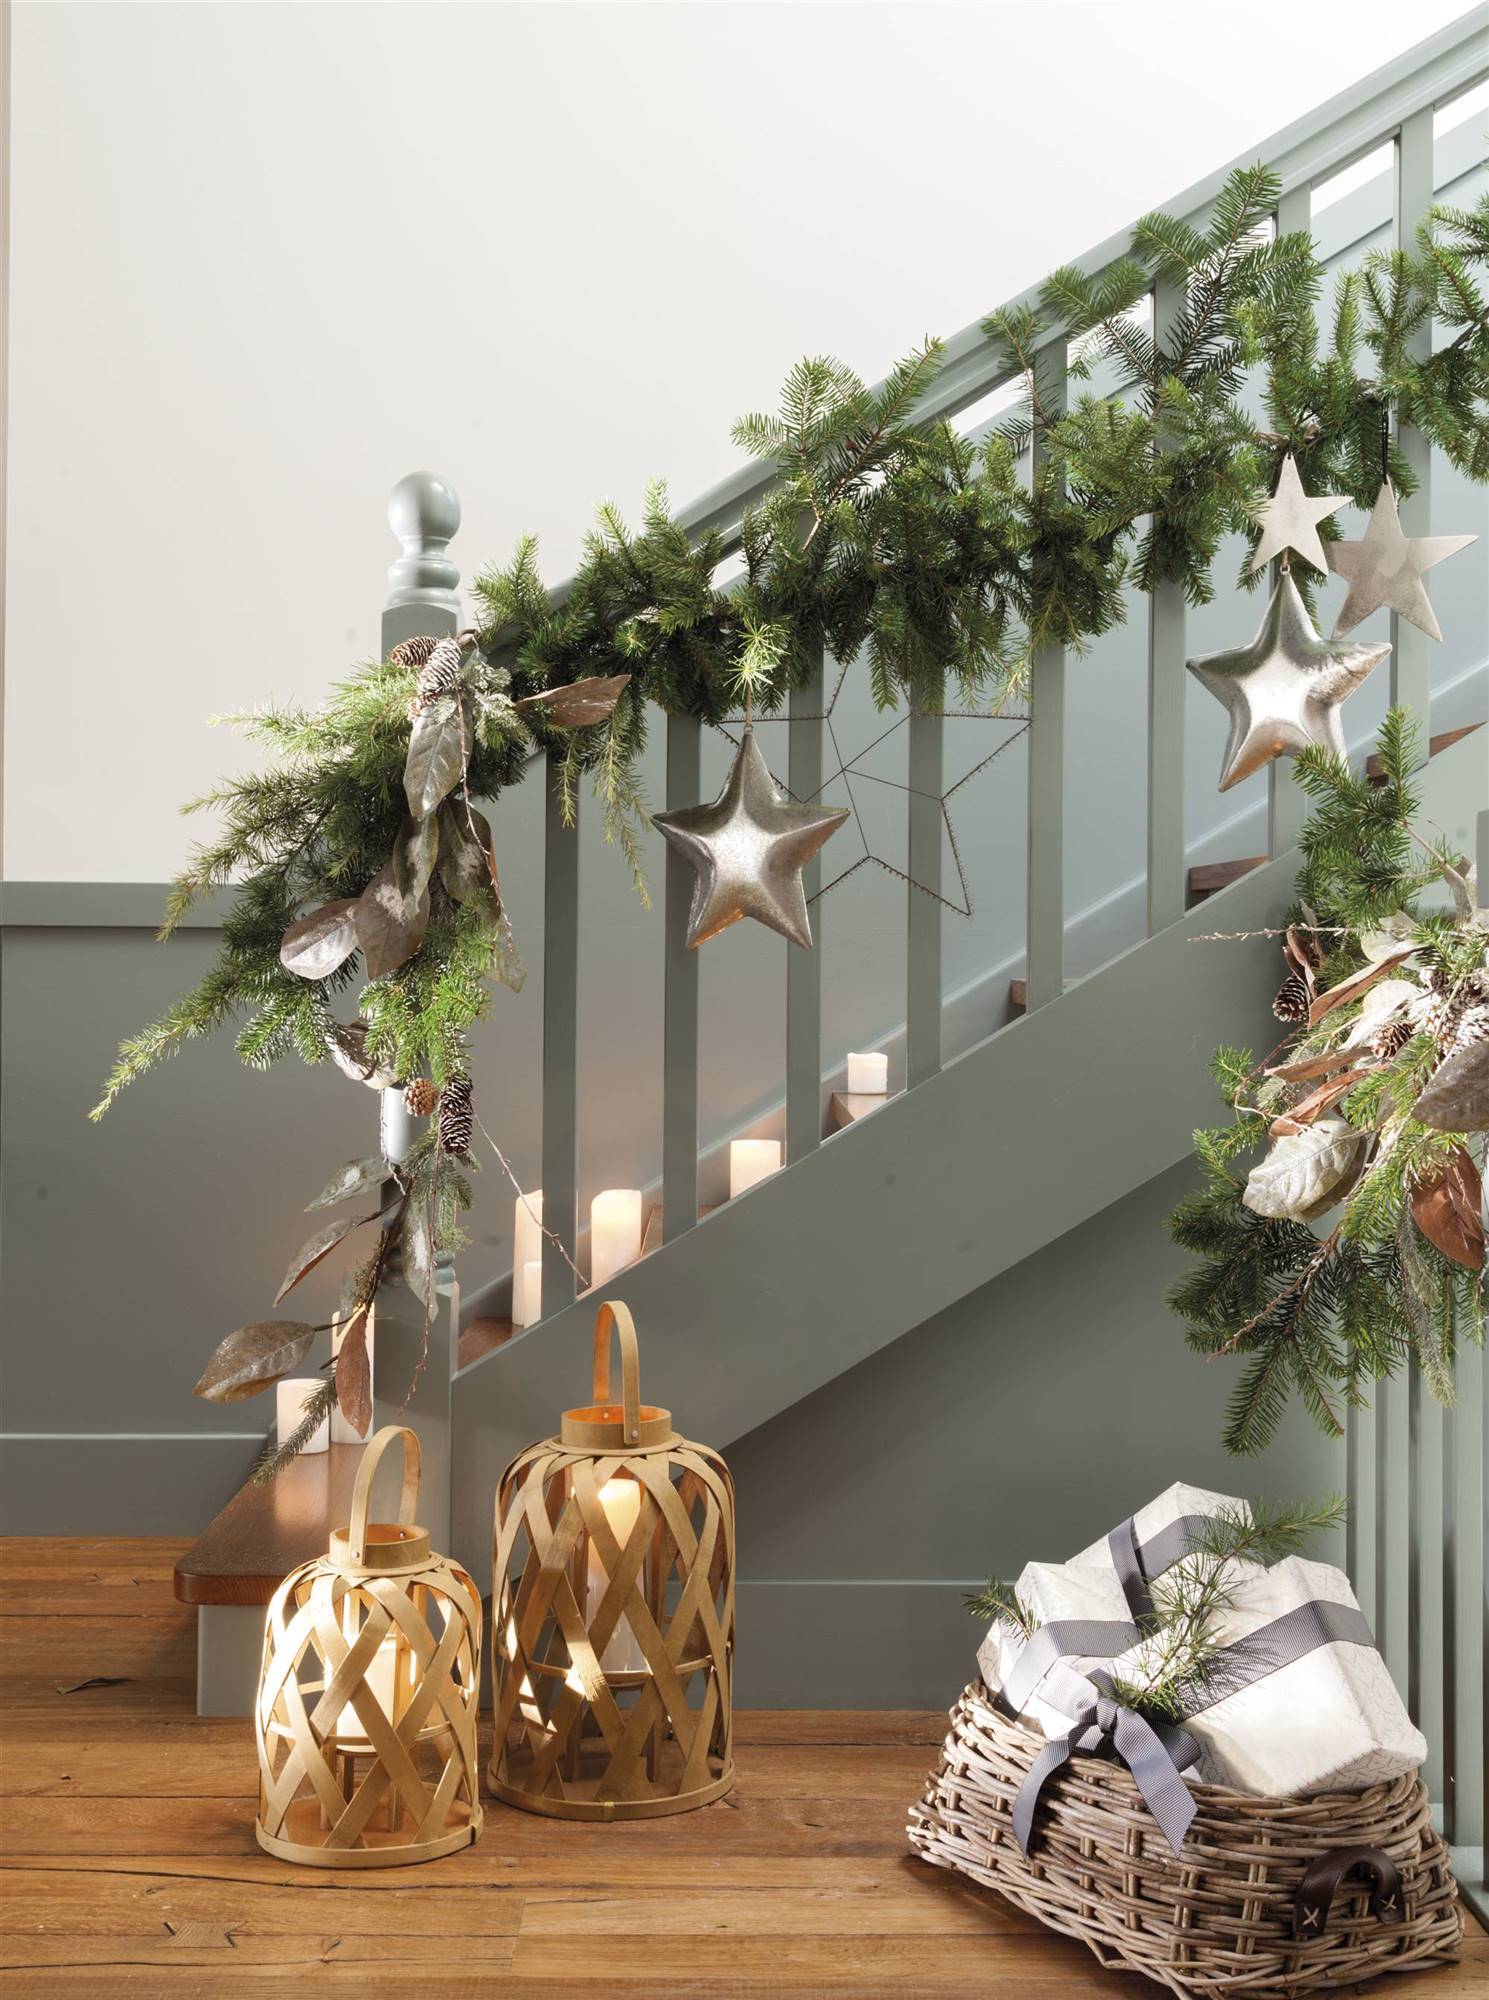 escaleras decoradas por navidad 00529106